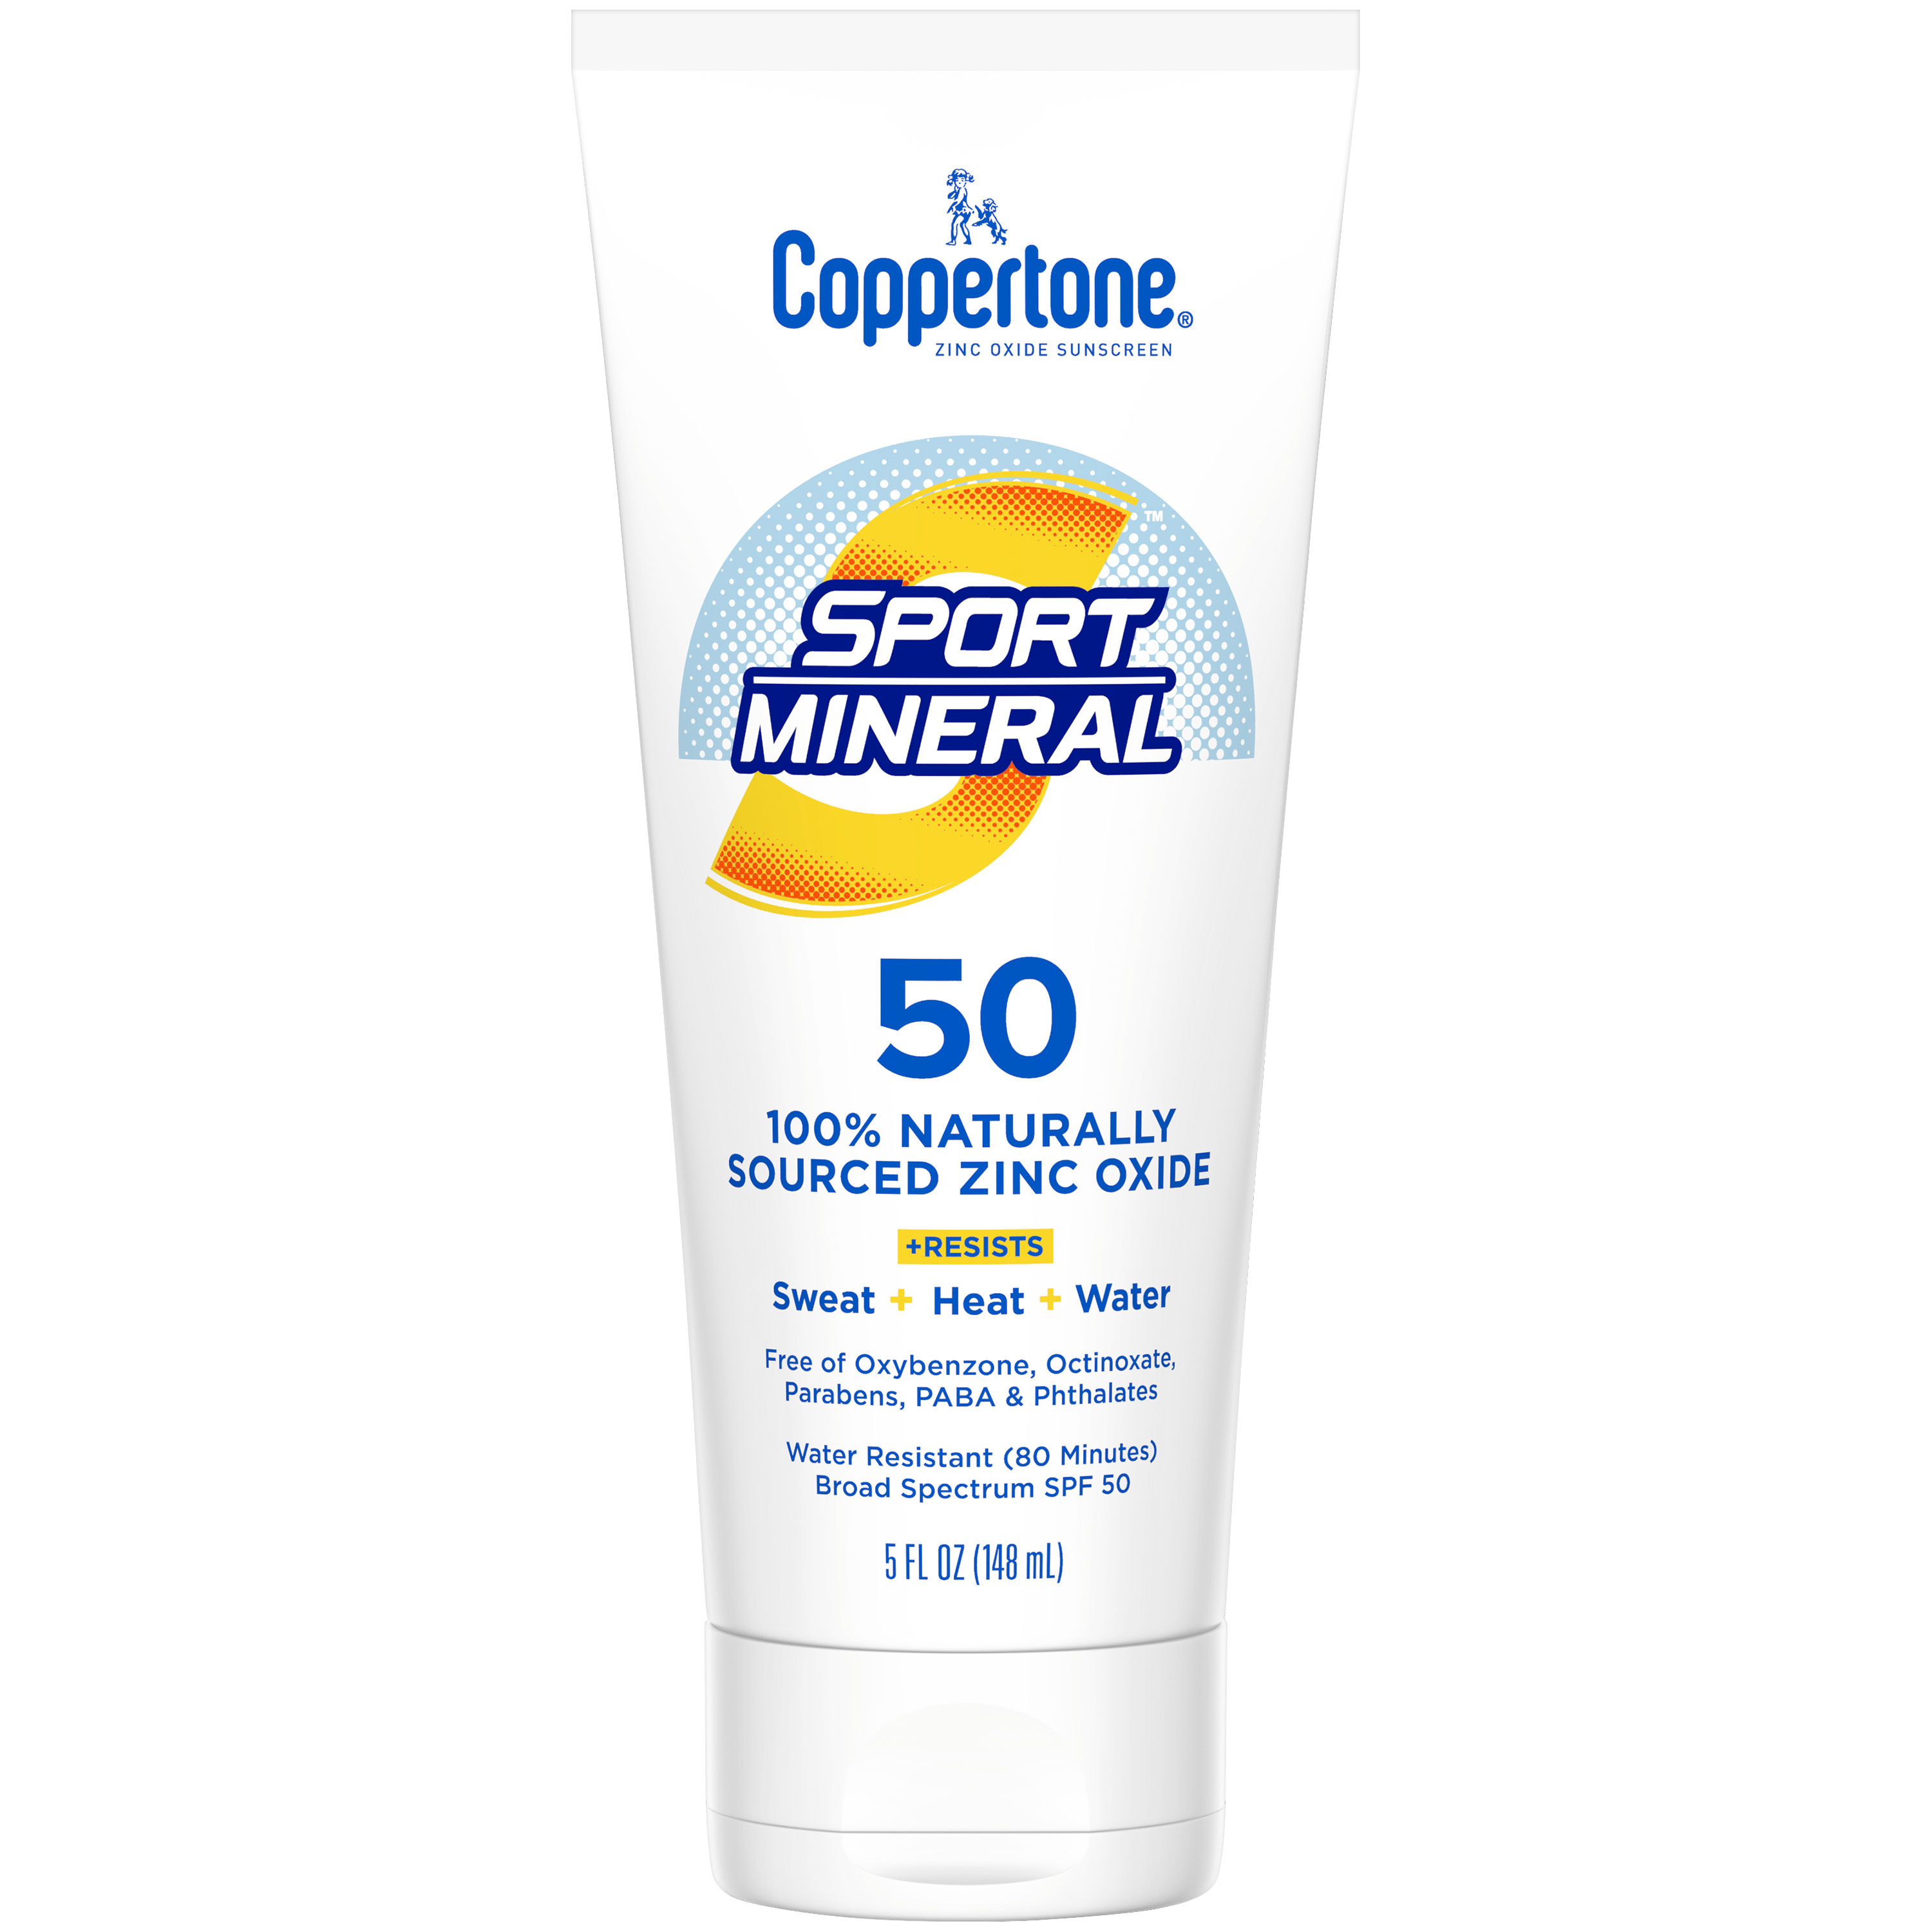 Coppertone Sport Mineral SPF 50 Sunscreen Lotion, 5oz